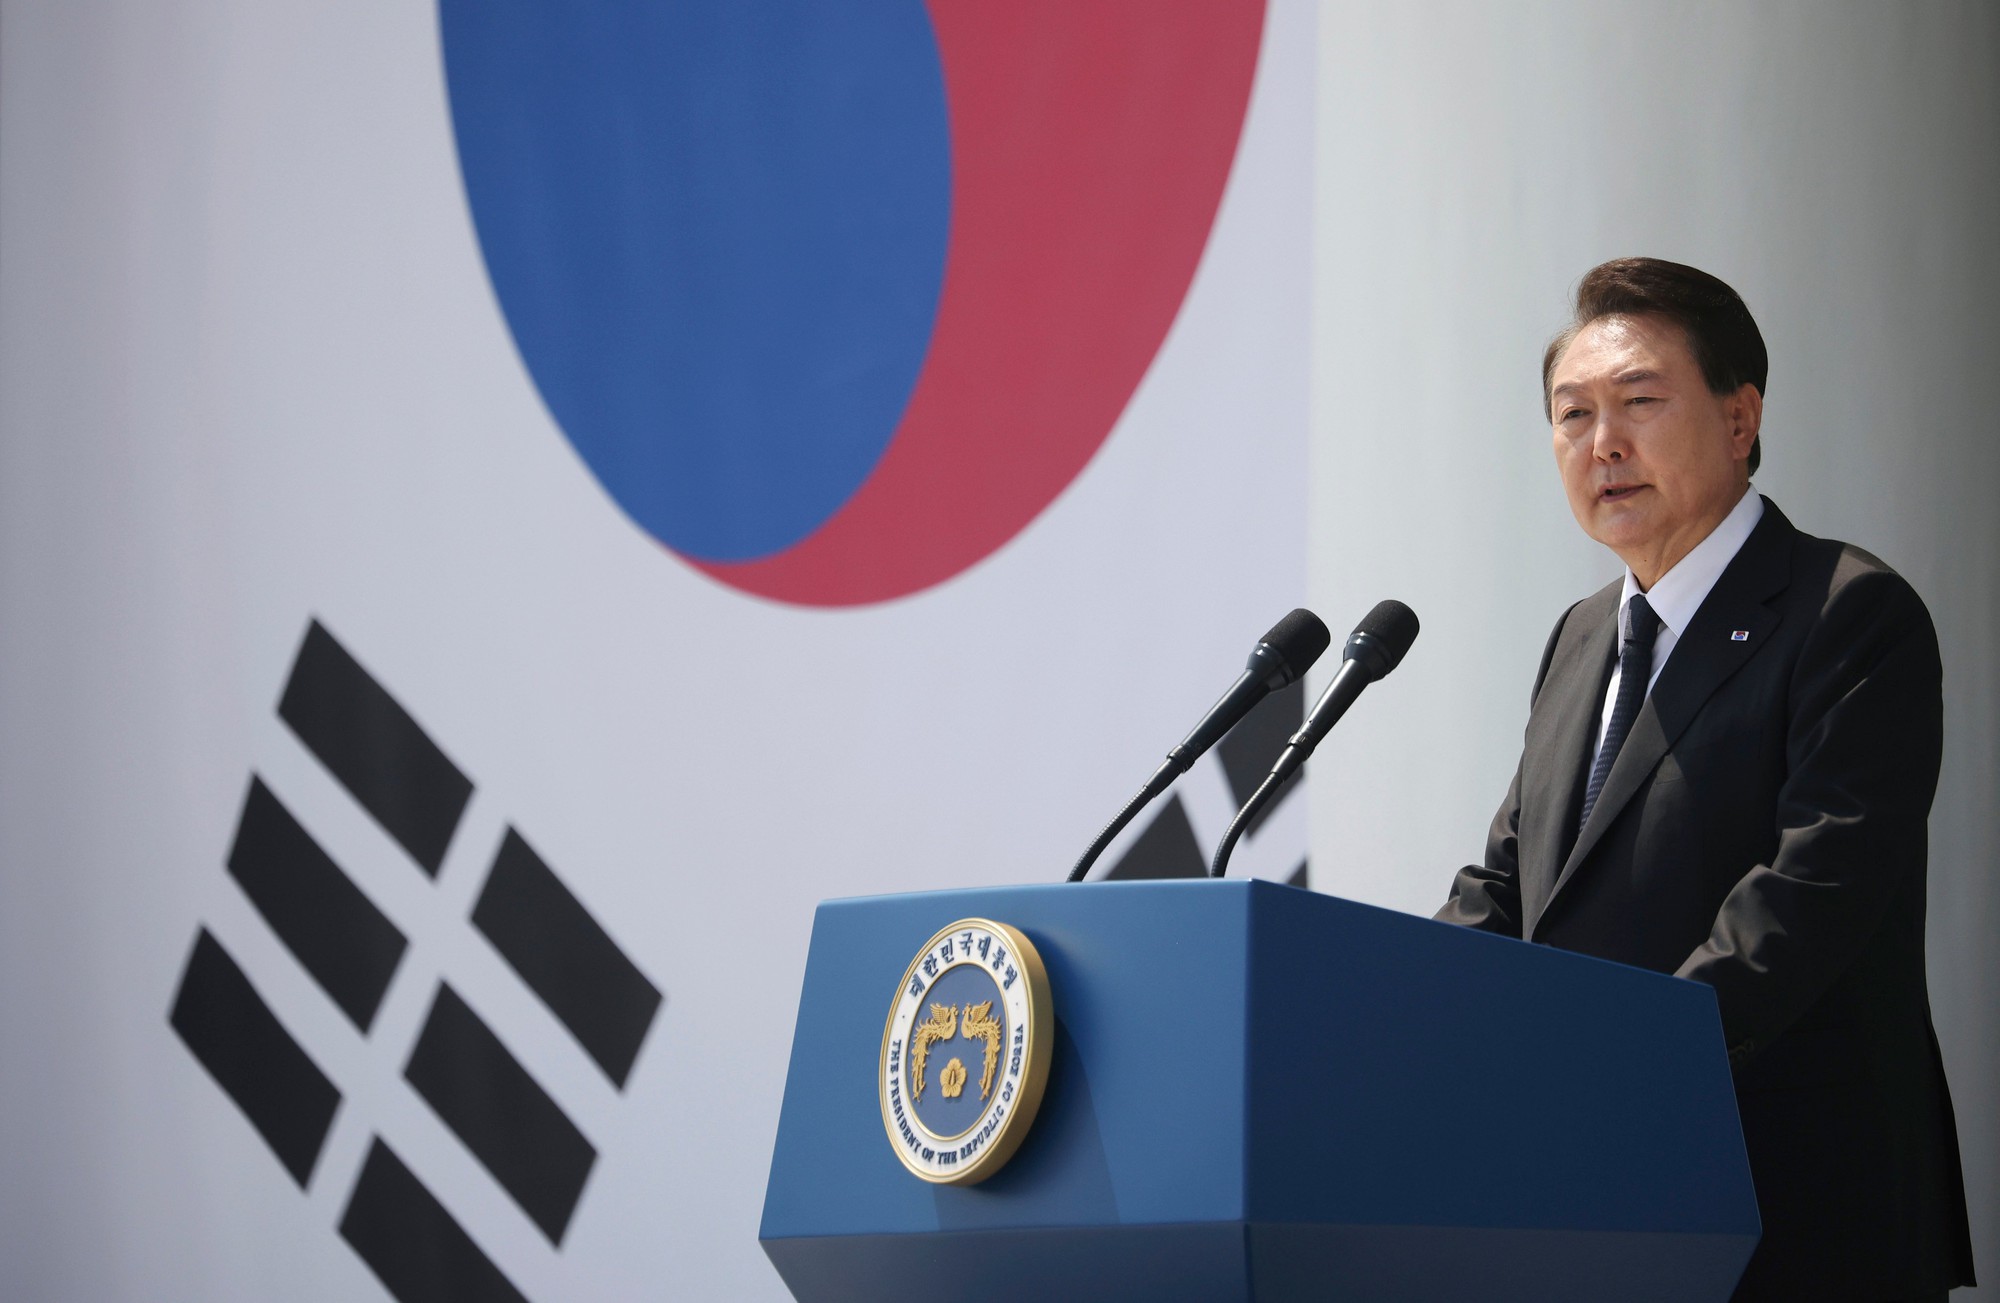 Báo Hàn: Sẽ có các MOU được ký giữa phái đoàn 205 doanh nghiệp Hàn Quốc bao gồm các chaebol với phía Việt Nam - Ảnh 1.